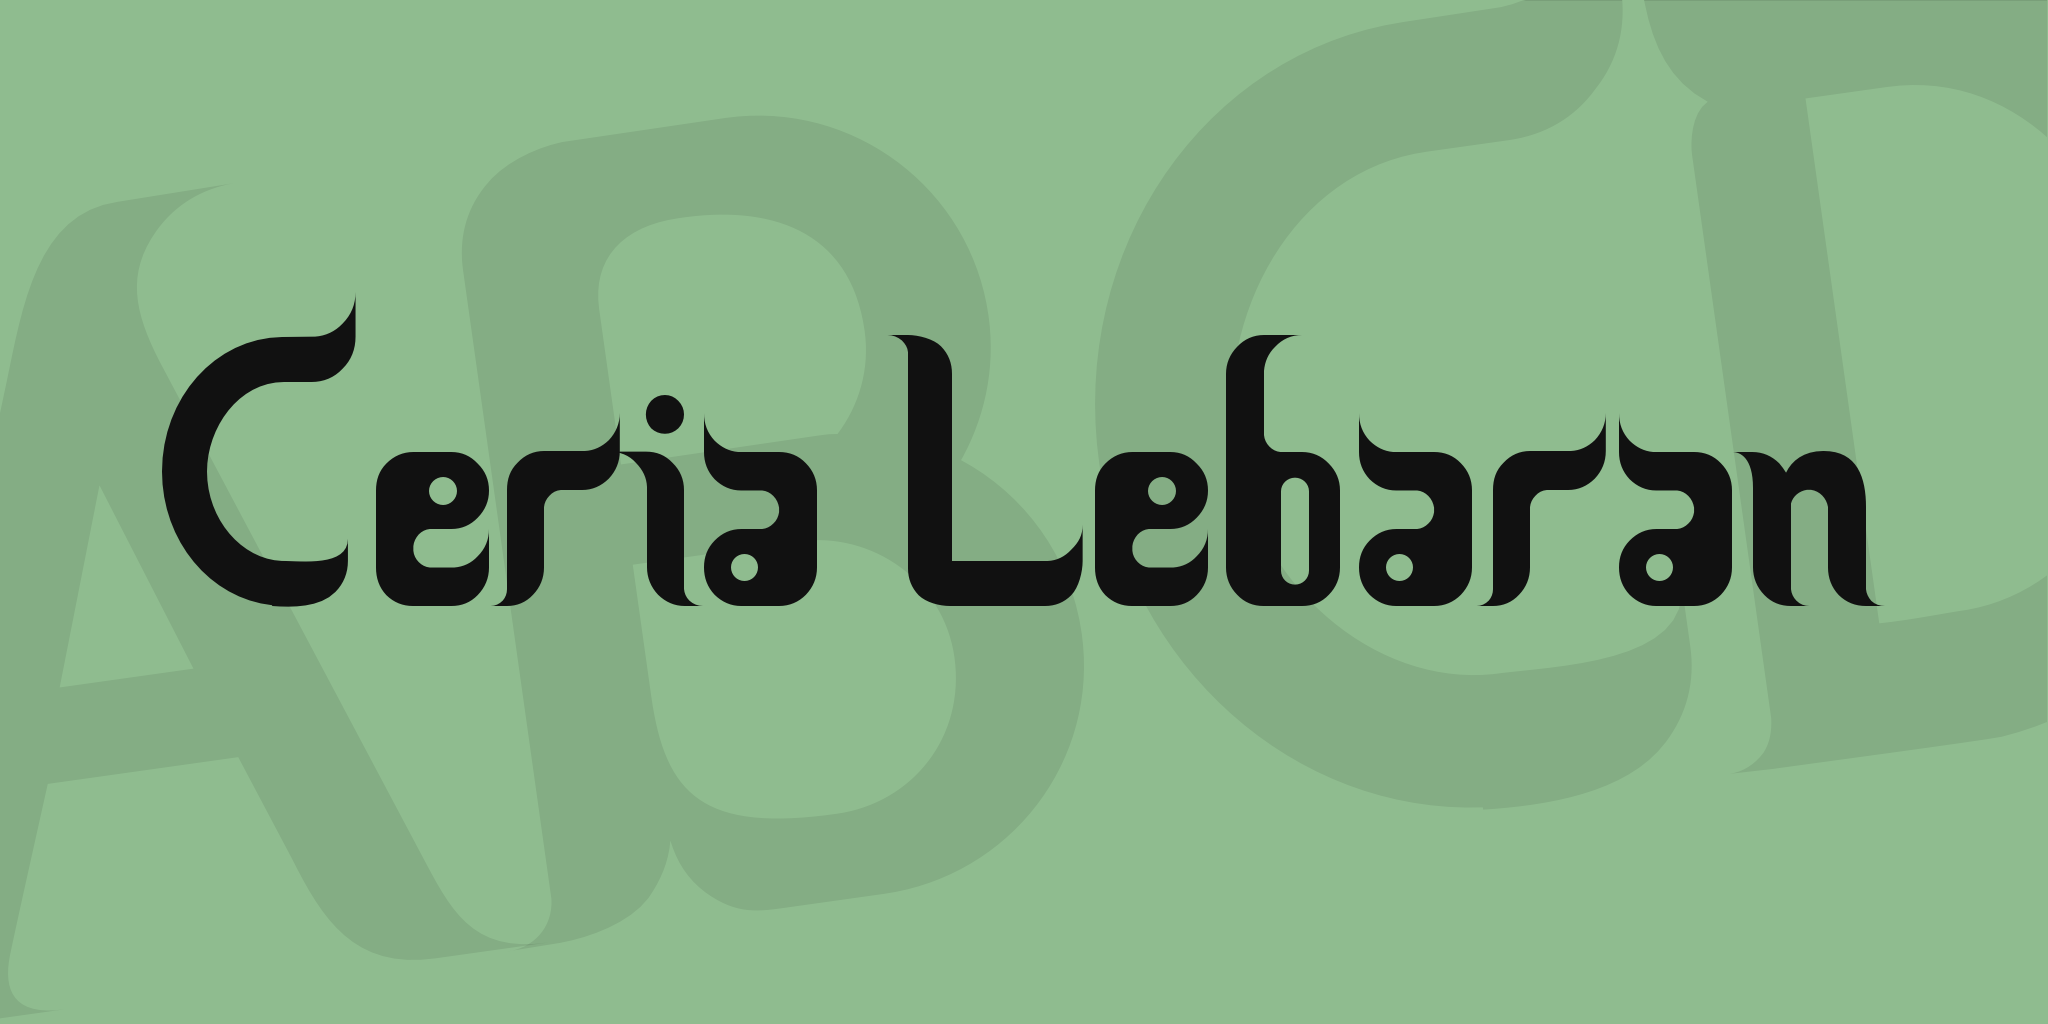 Ceria Lebaran